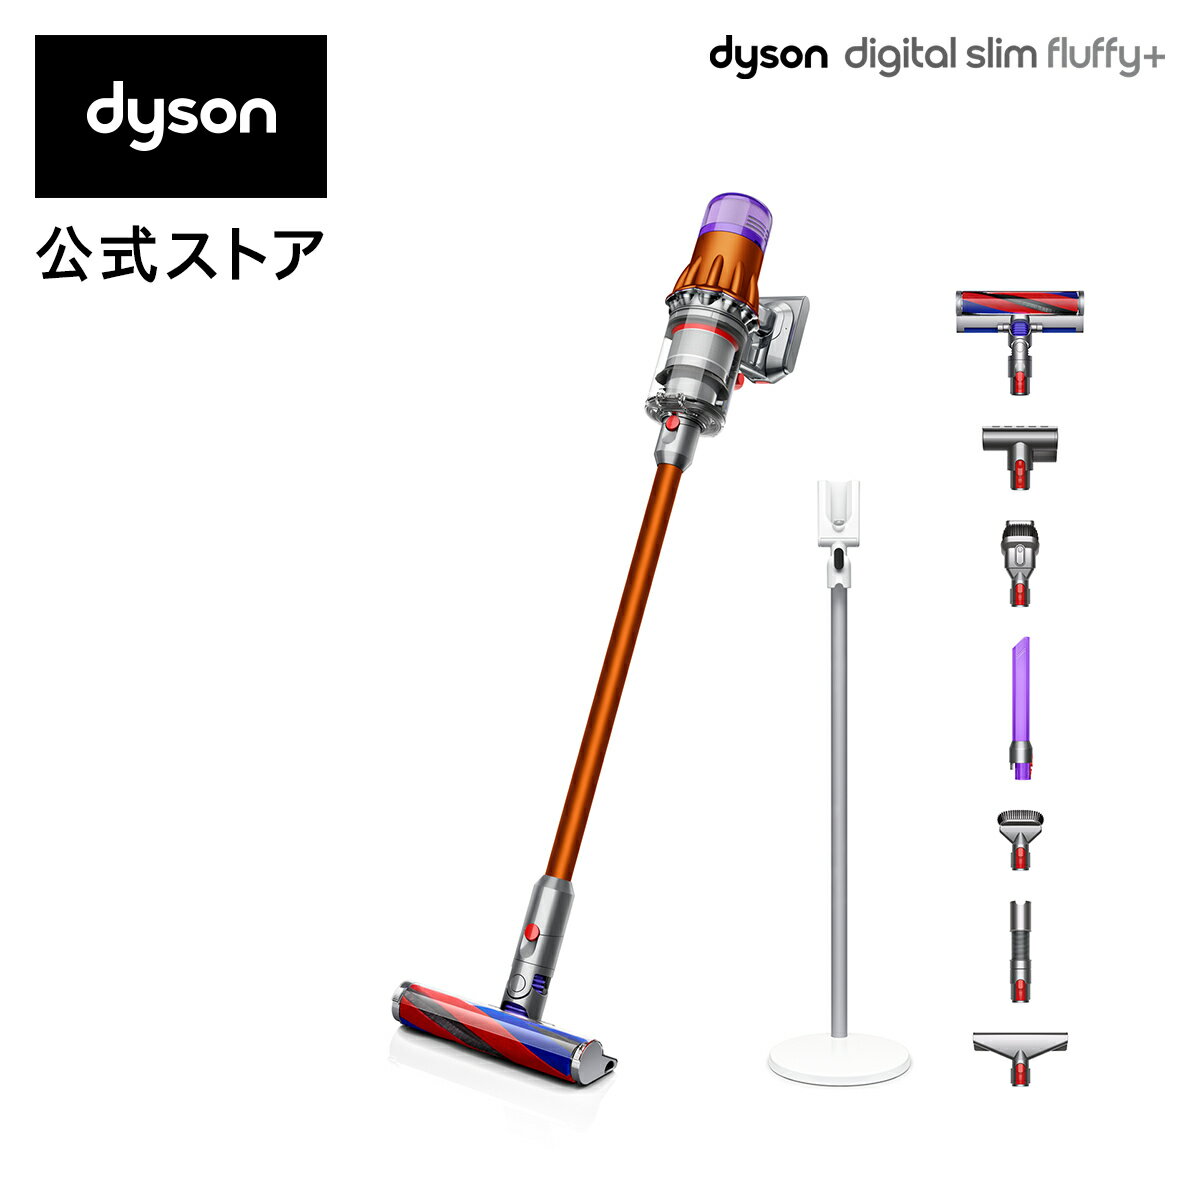 【軽量でパワフル】ダイソン Dyson Digital Slim Fluffy+ サイクロン式 コードレス掃除機 dyson SV18FFCOM 2020年モデル